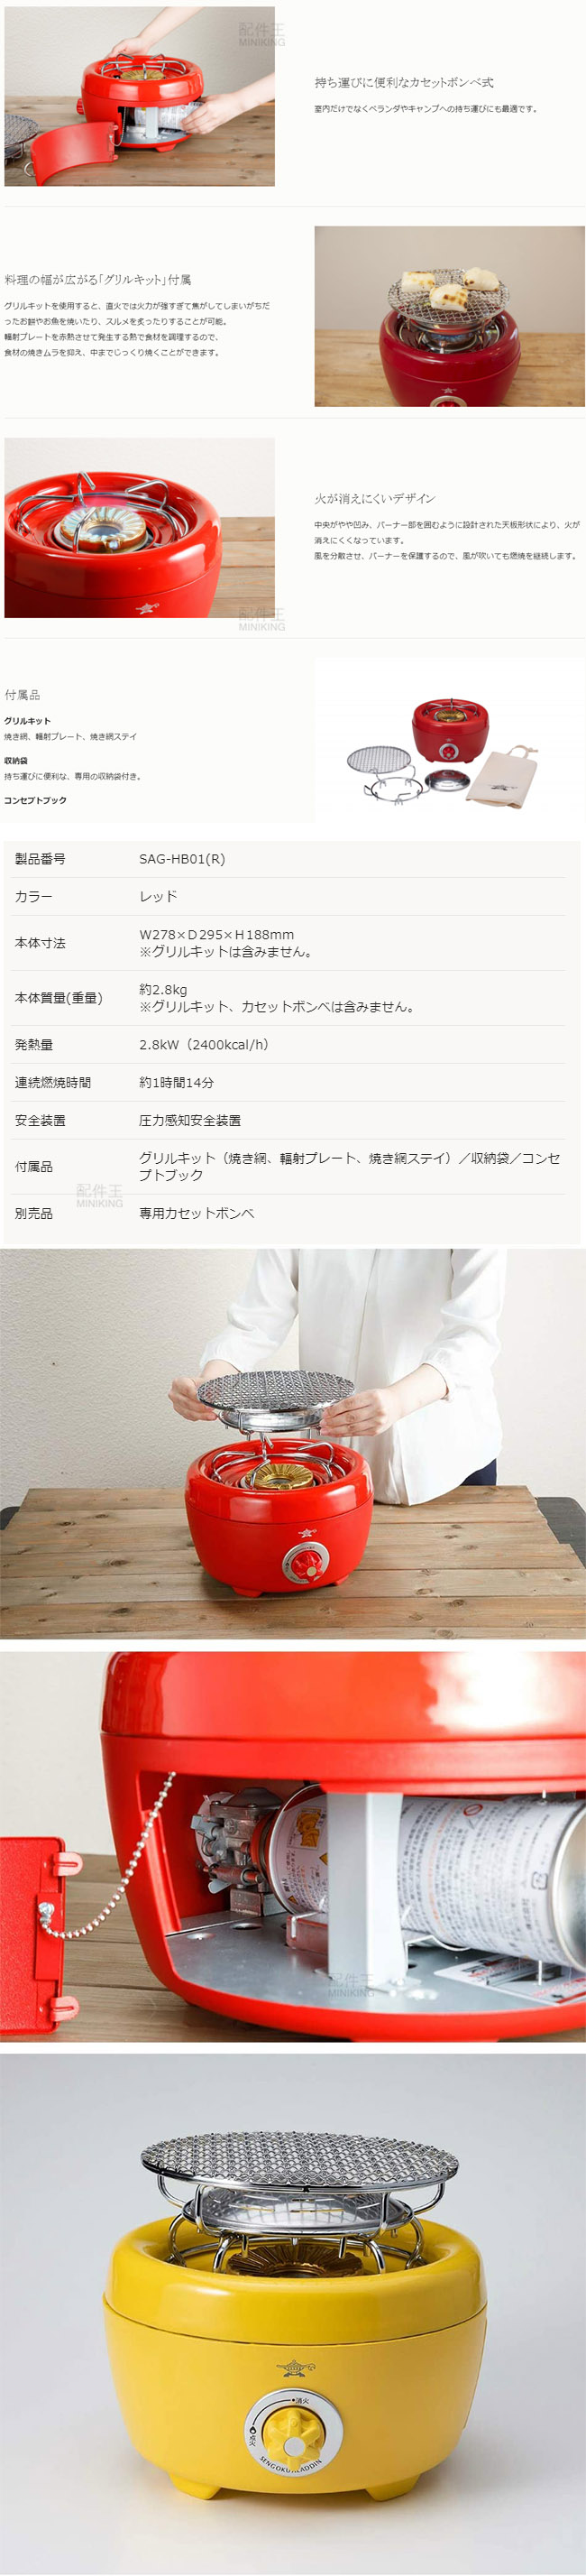 日本代購空運Aladdin 阿拉丁SAG-HB01 卡式瓦斯爐日式火鉢型烤肉爐圓形烤爐燒烤| 配件王日本精品直營店| 樂天市場Rakuten